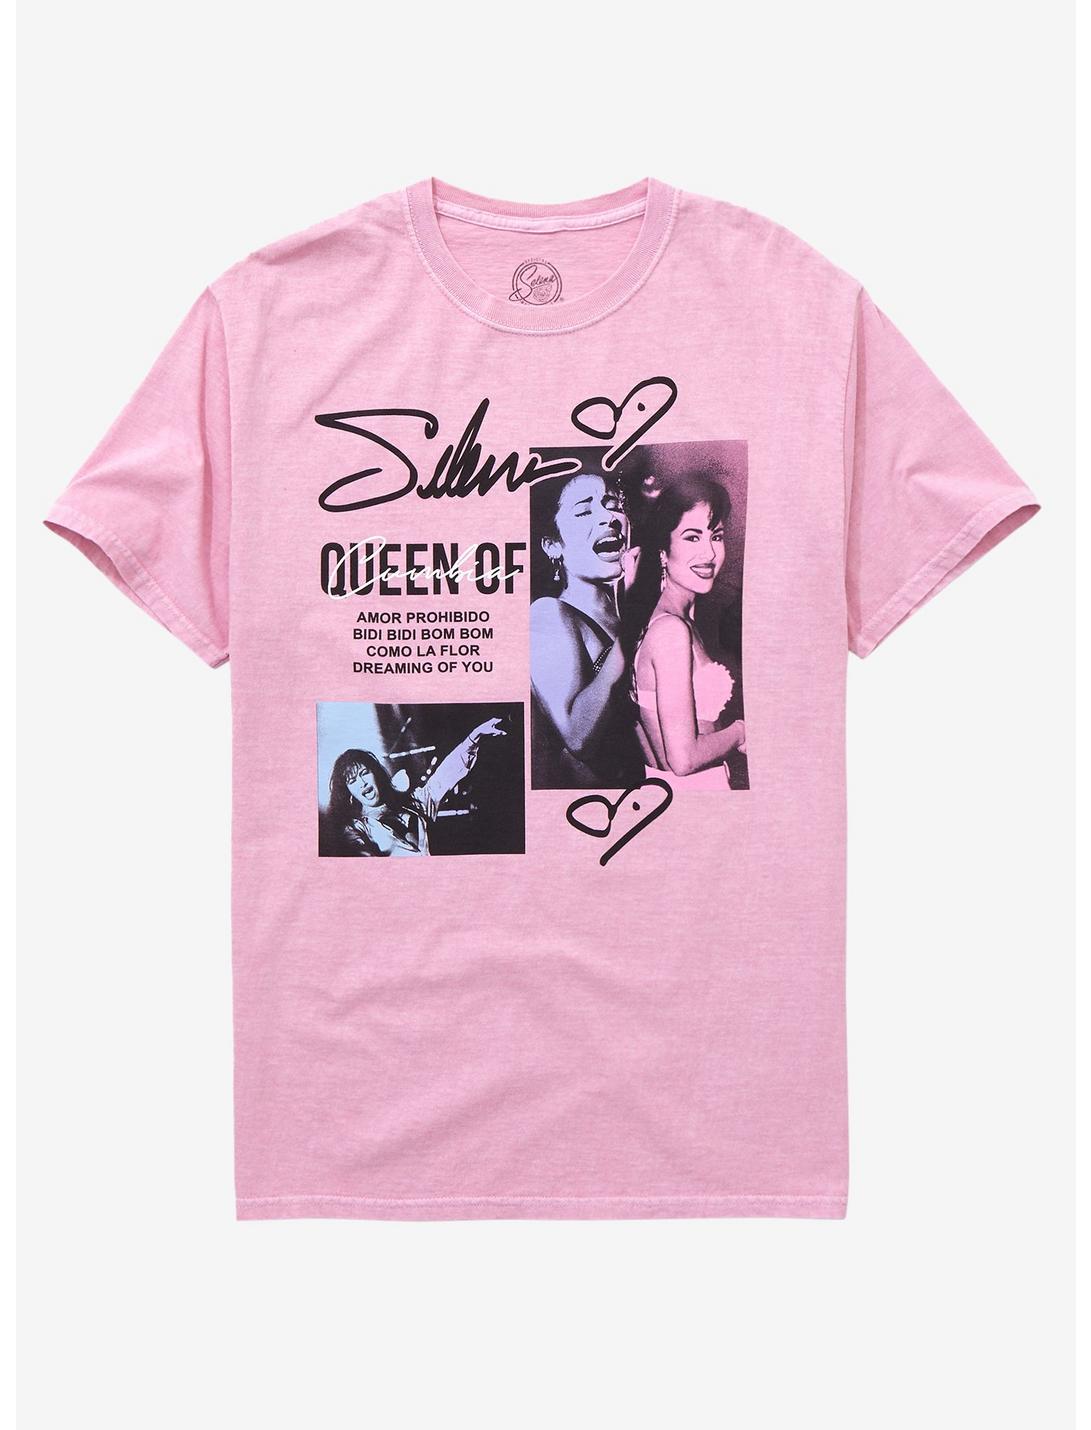 Selena Queen Of Cumbia Boyfriend Fit Girls T-Shirt, PINK, hi-res